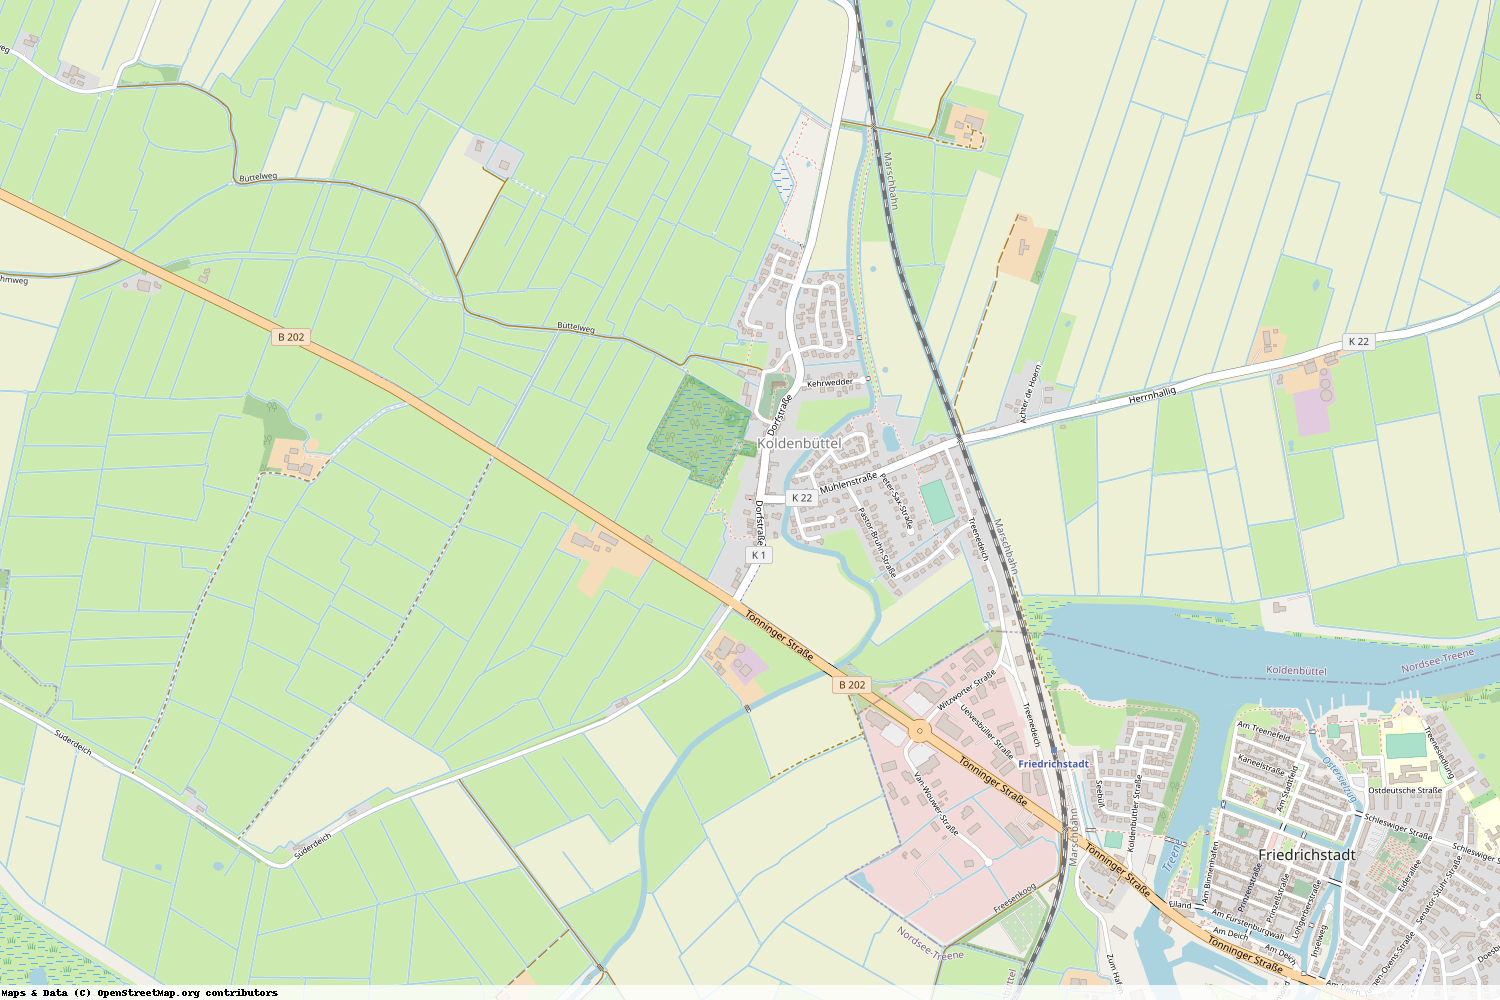 Ist gerade Stromausfall in Schleswig-Holstein - Nordfriesland - Koldenbüttel?